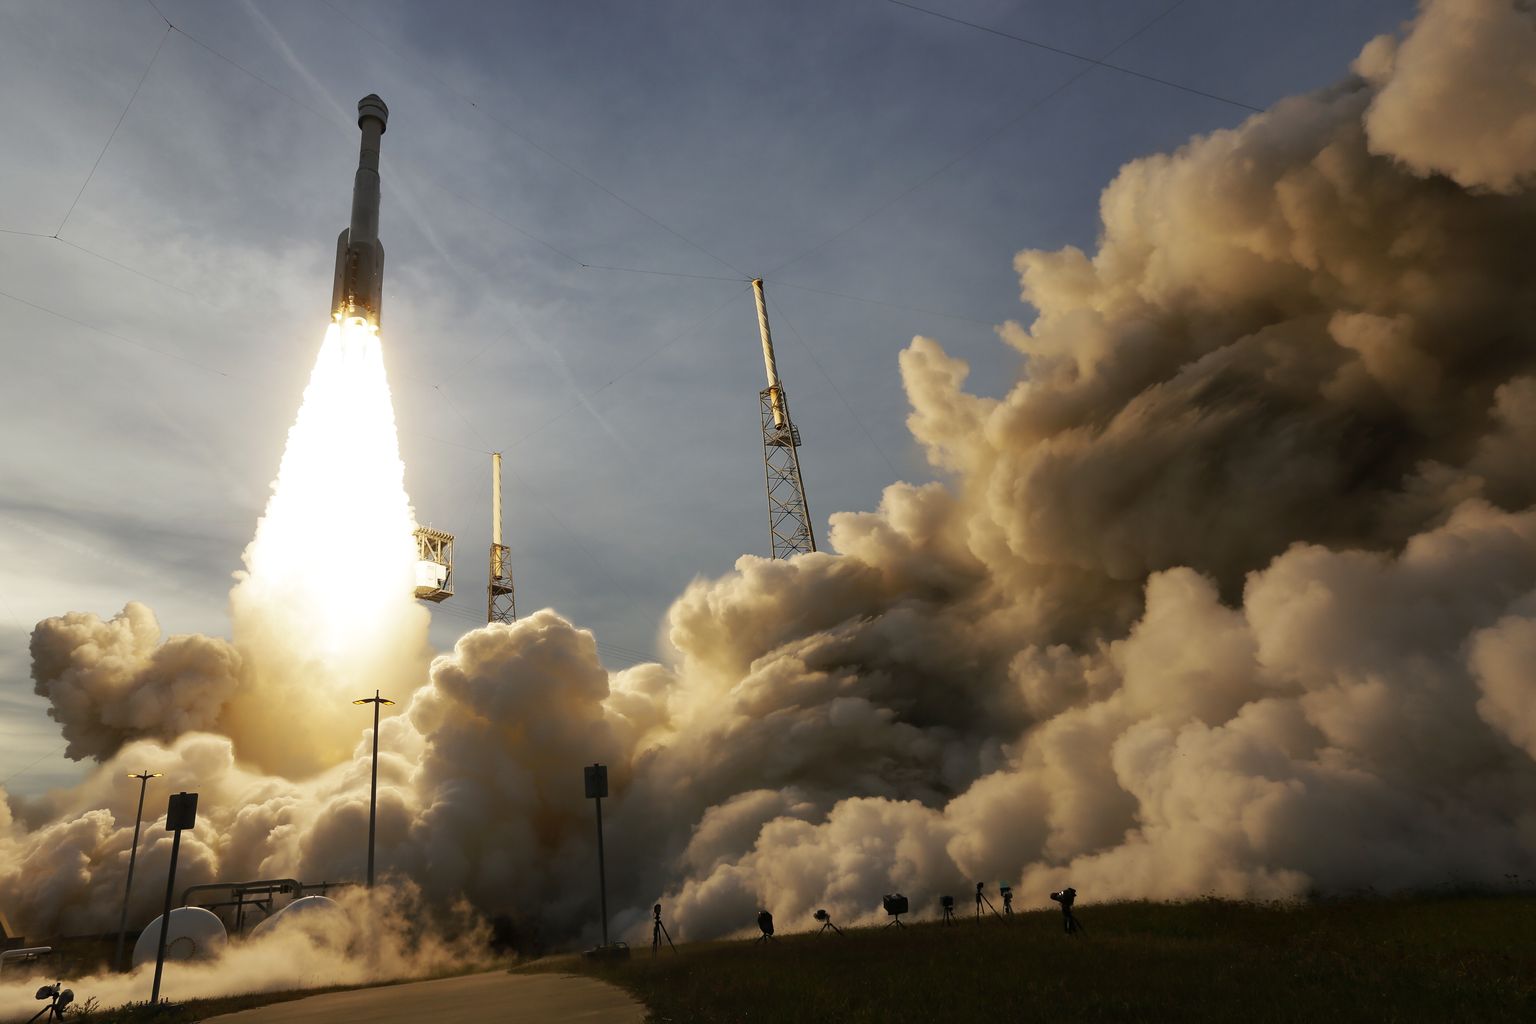 United Launch Alliance'i kanderakett Atlas V startis Florida osariigis Canaverali neemel asuvast Kennedy kosmosekeskusest, viies endaga mehitamata katselennul Rahvusvahelisse Kosmosejaama (ISS) kaasa Boeing Starlineri lastitud kosmoselaeva.